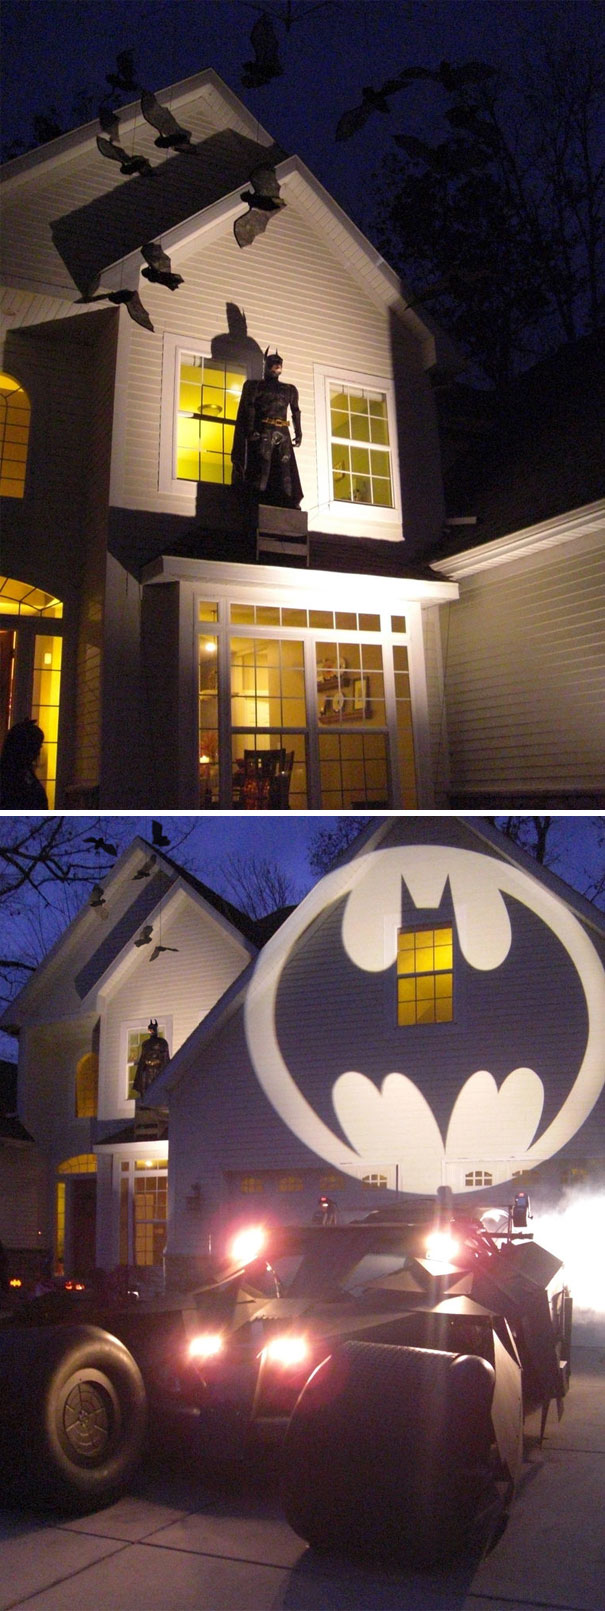 Batman Themed Halloween Display